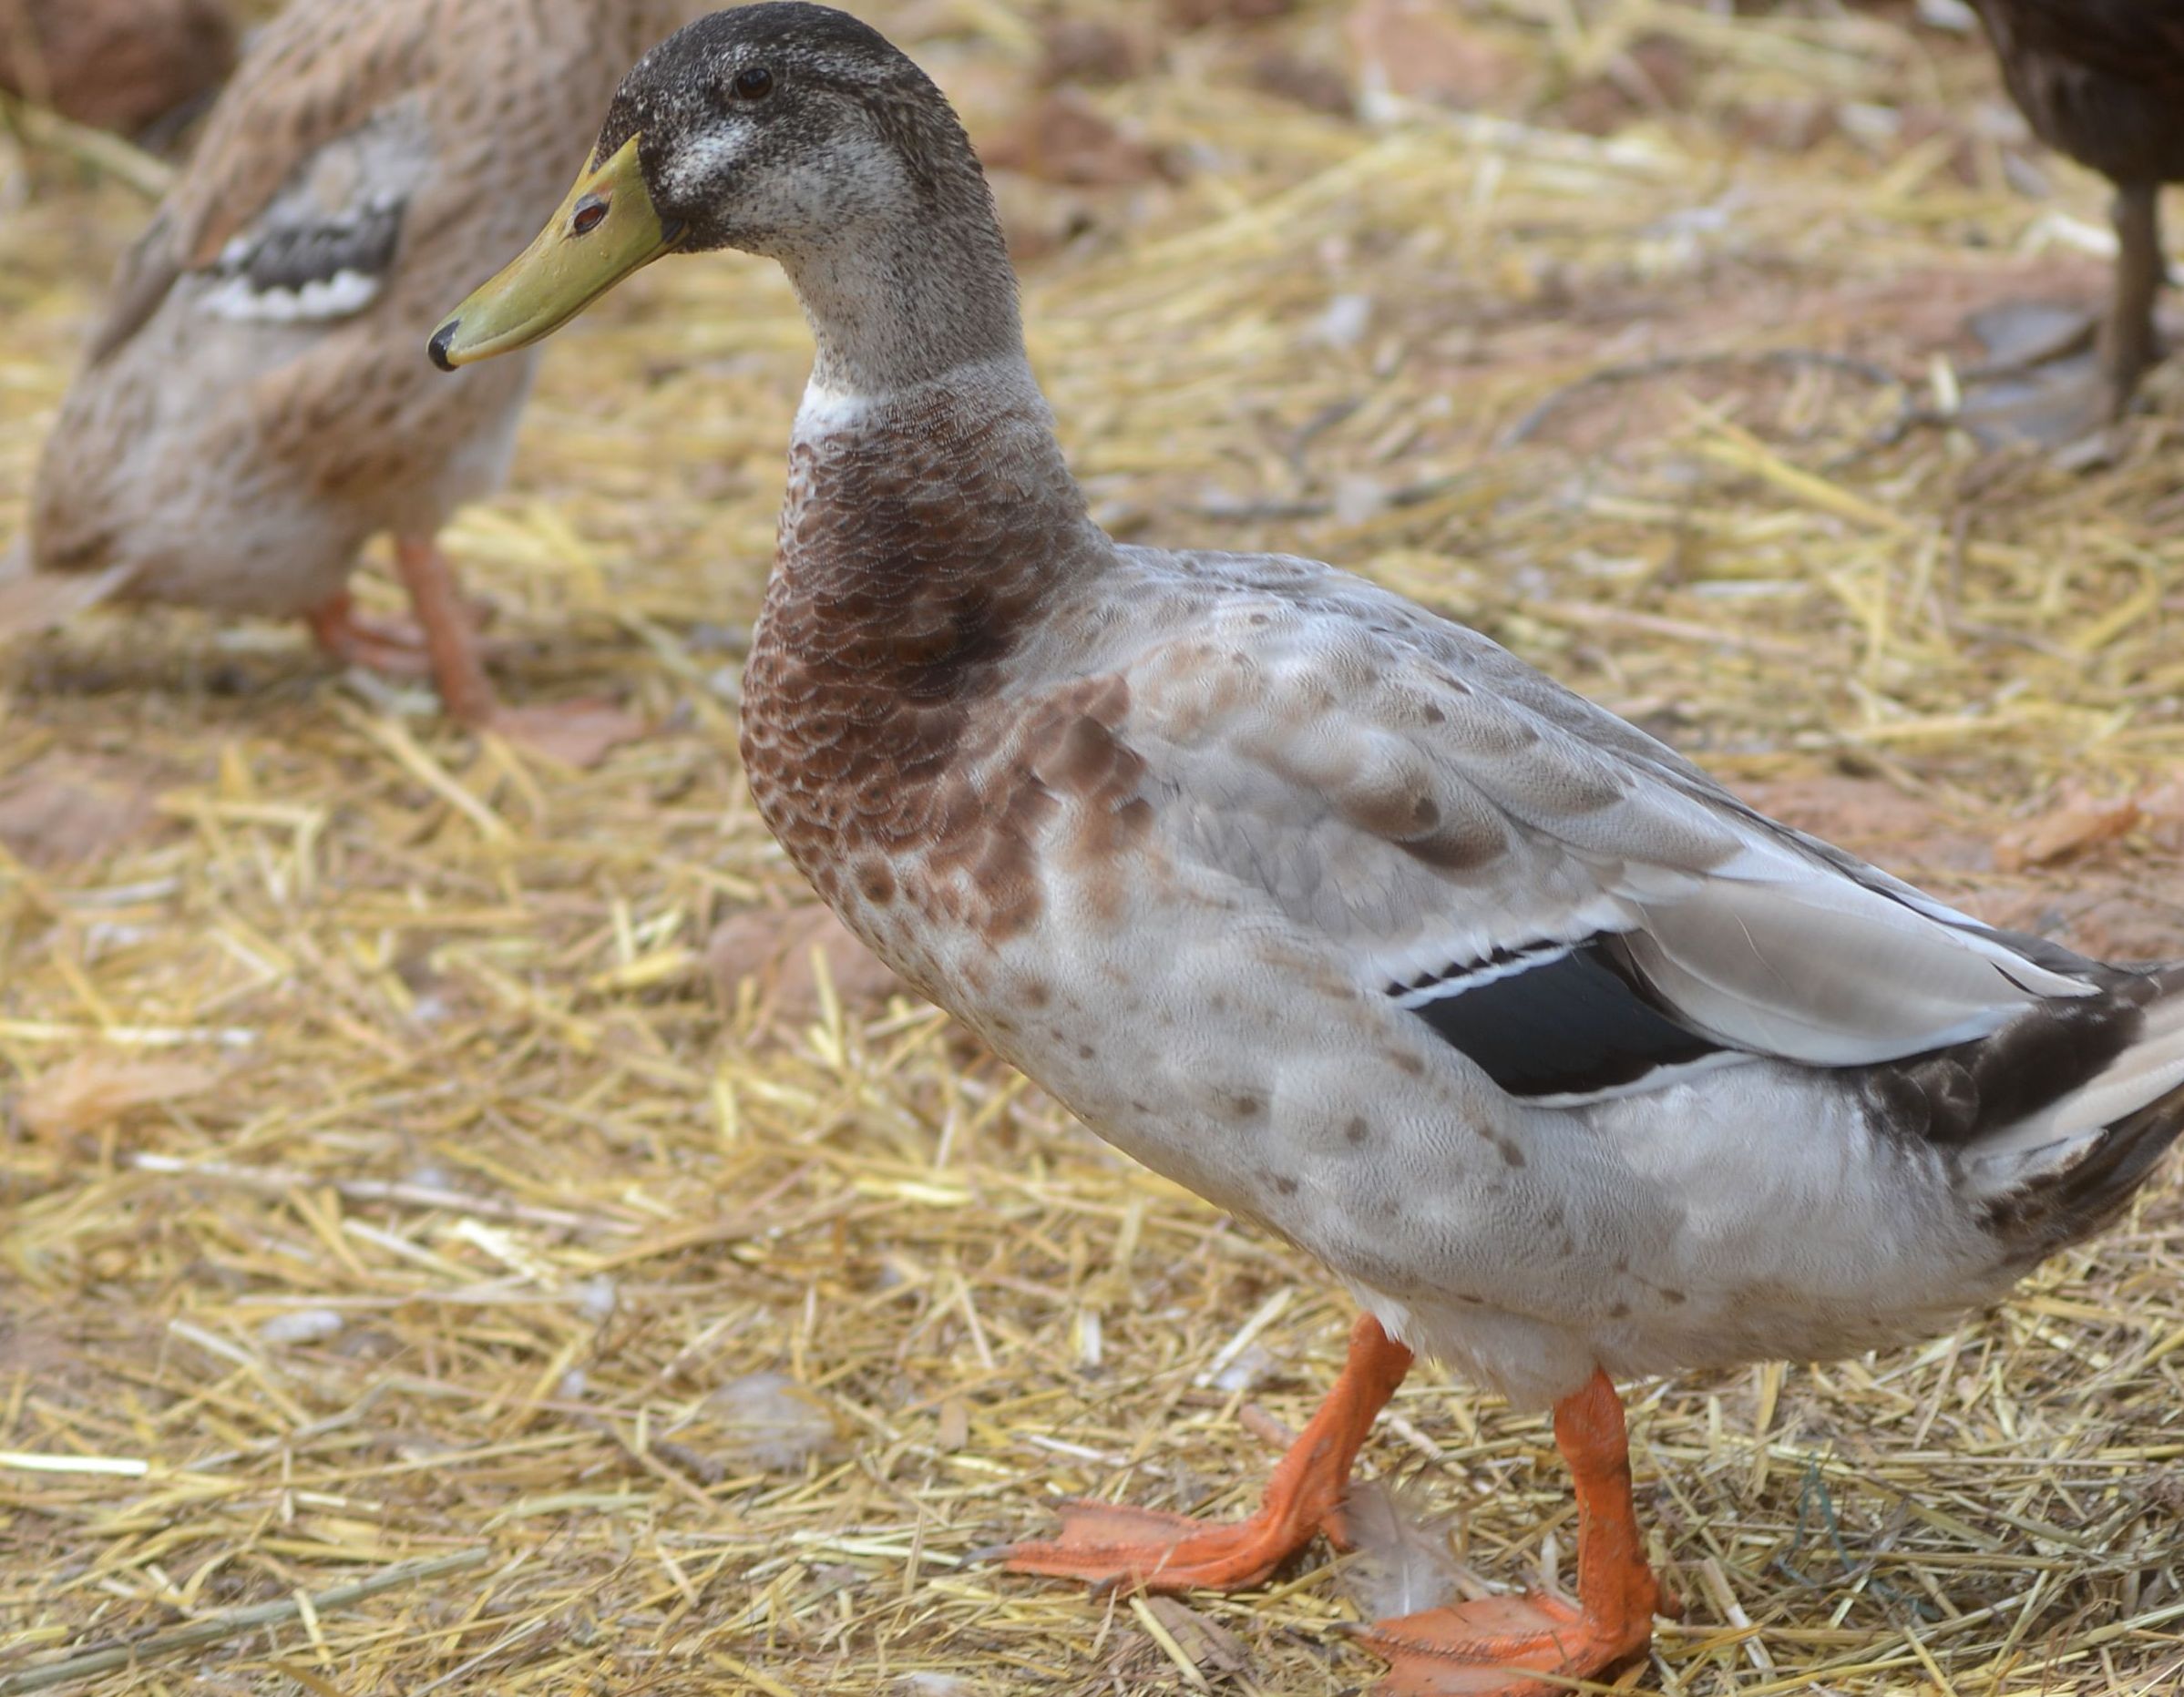 Matija ima patke i vrlo korisne indijske patke trkačice